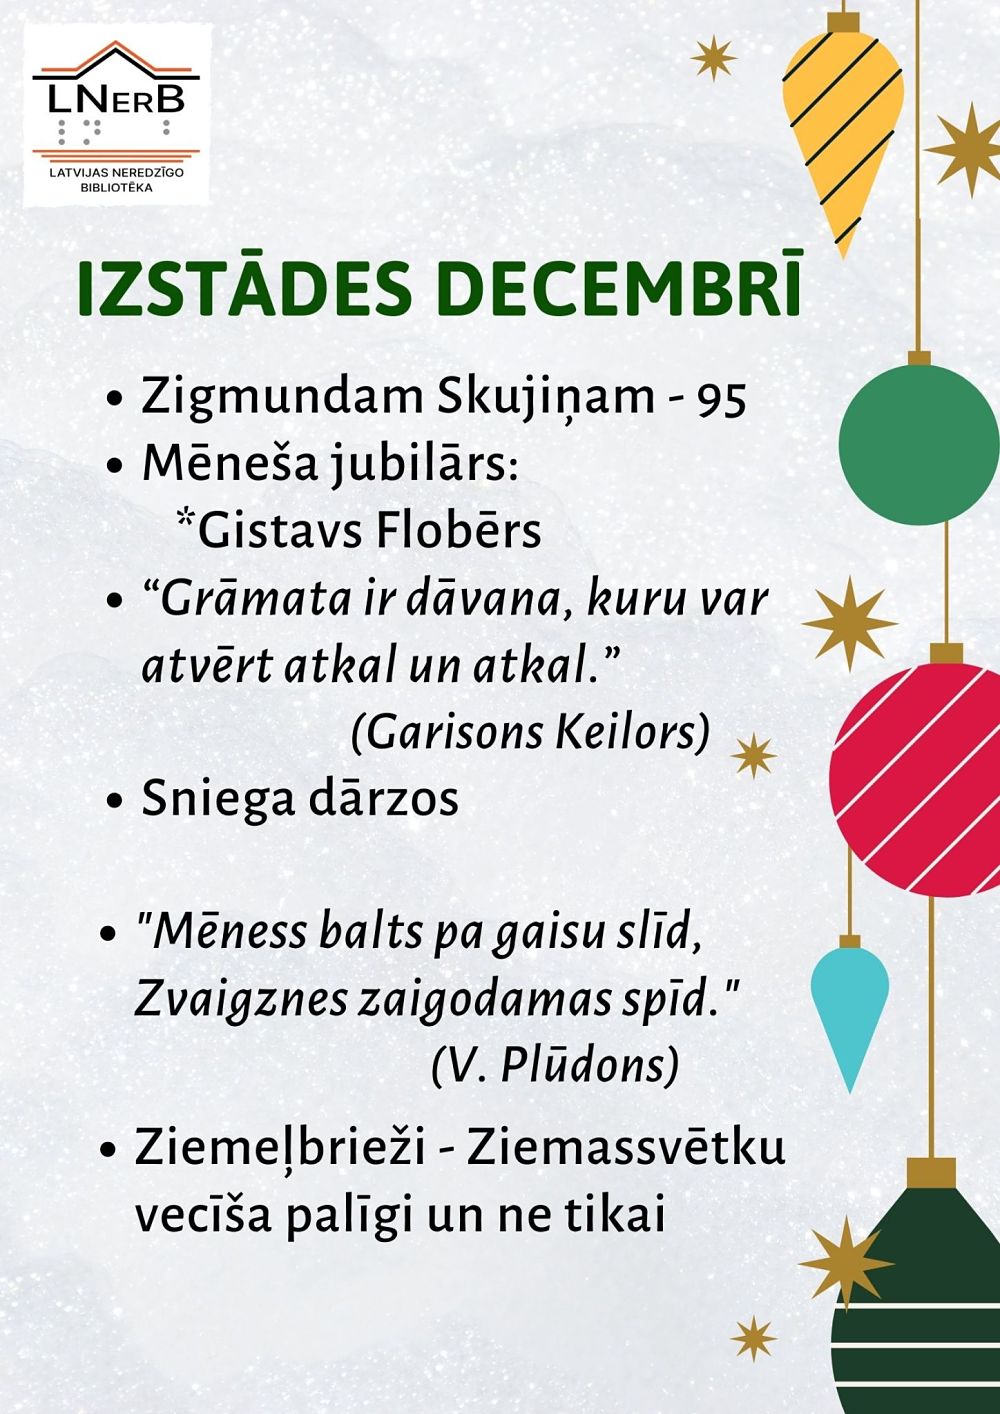 Plakāts "Izstādes bibliotēkā Rīgā decembrī 2021"